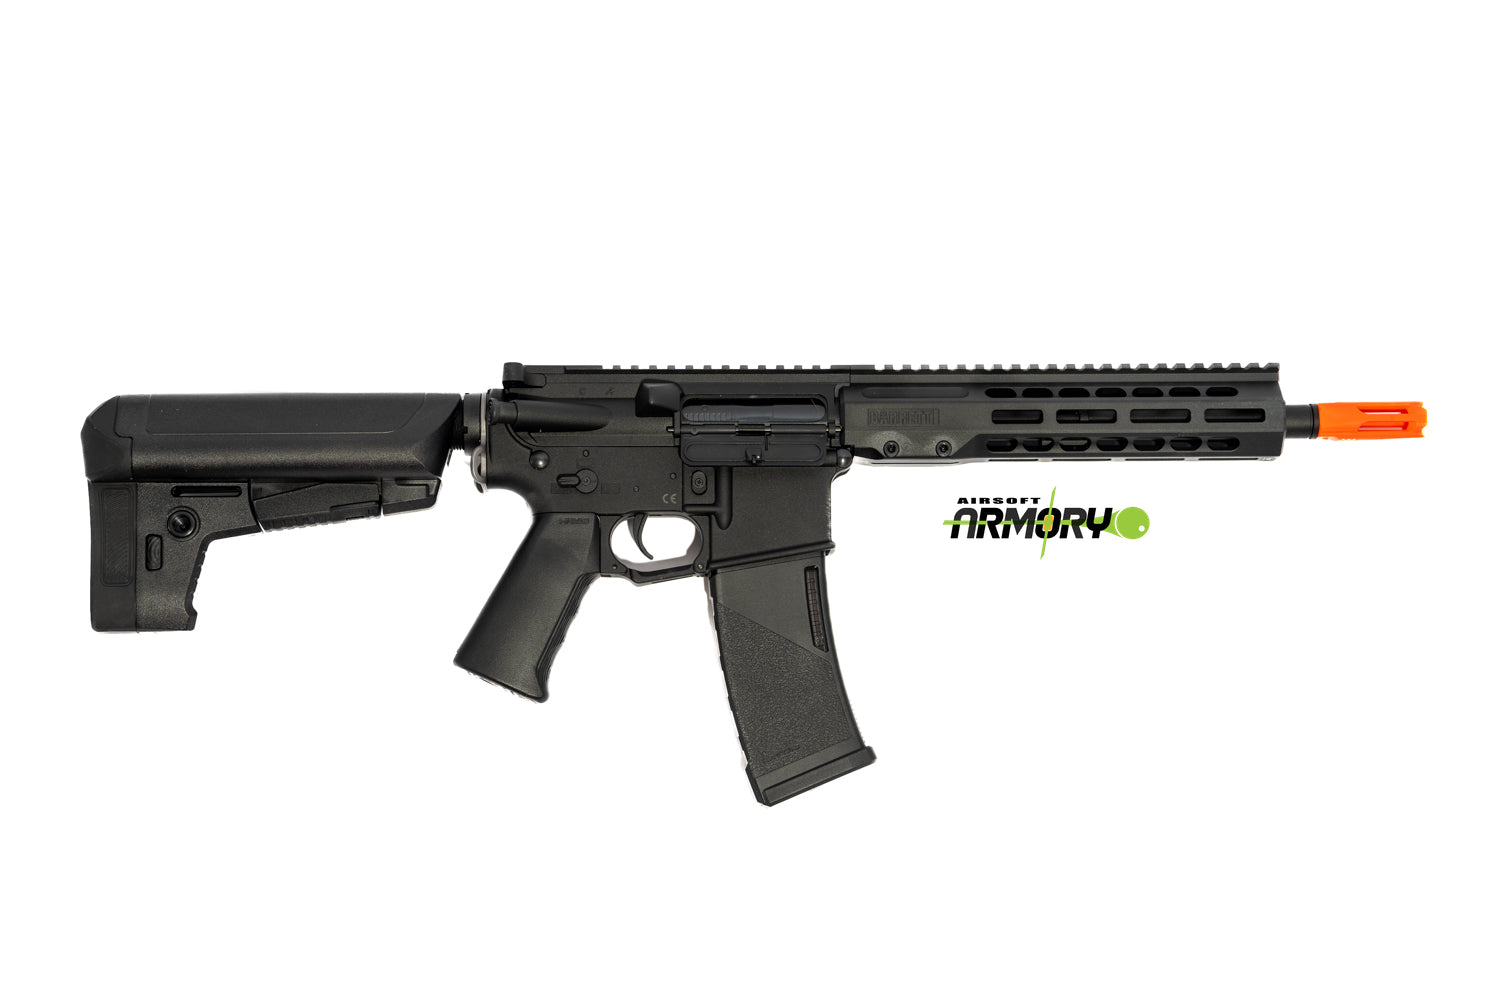 EMG / KRYTAC / BARRETT Firearms REC7 DI AR15 AEG Training Rifle (Color: Black / SBR)